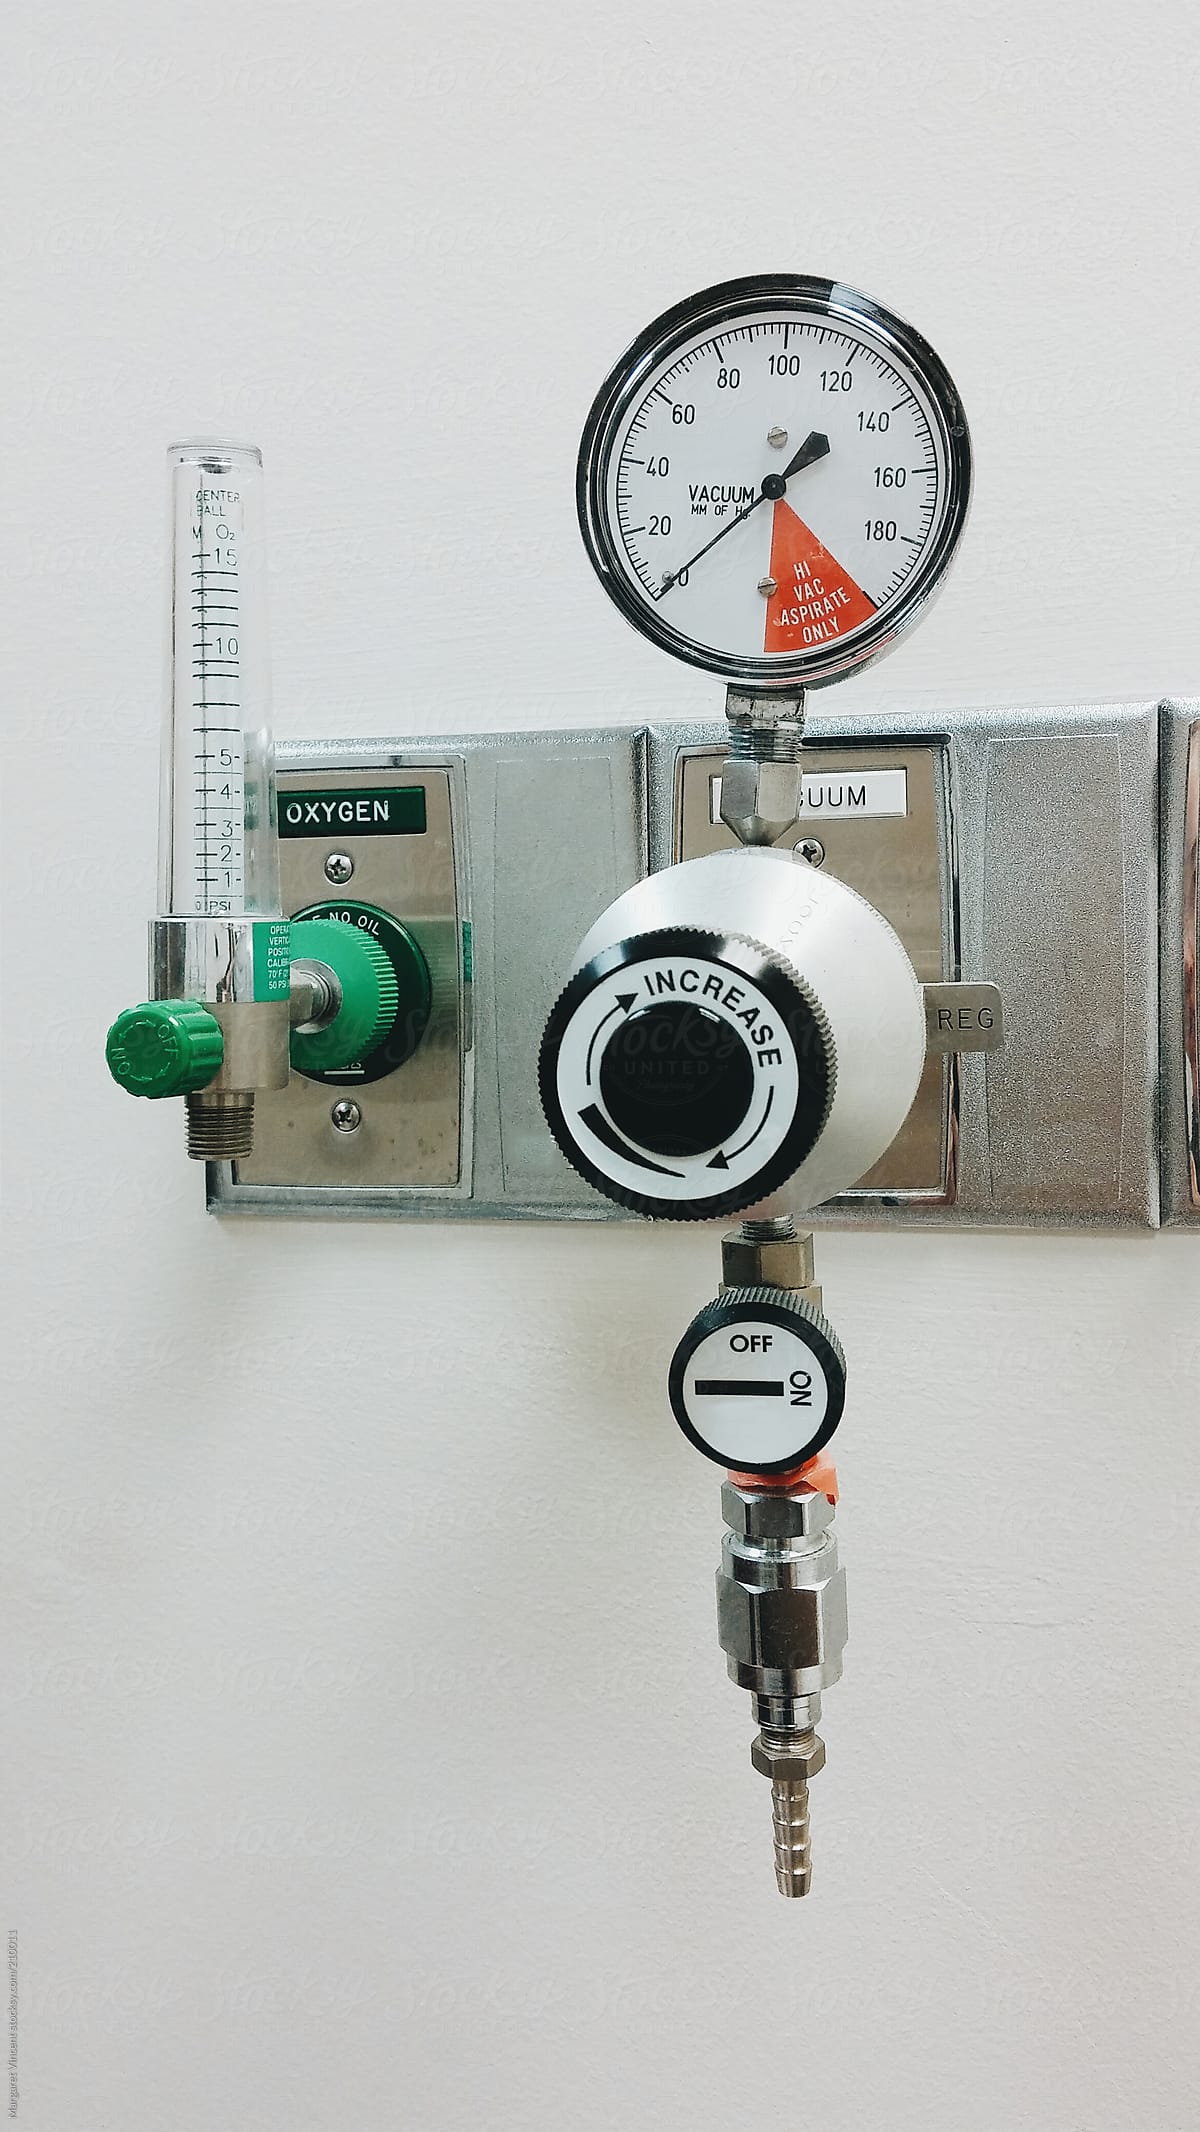 gauges in a medical exam room